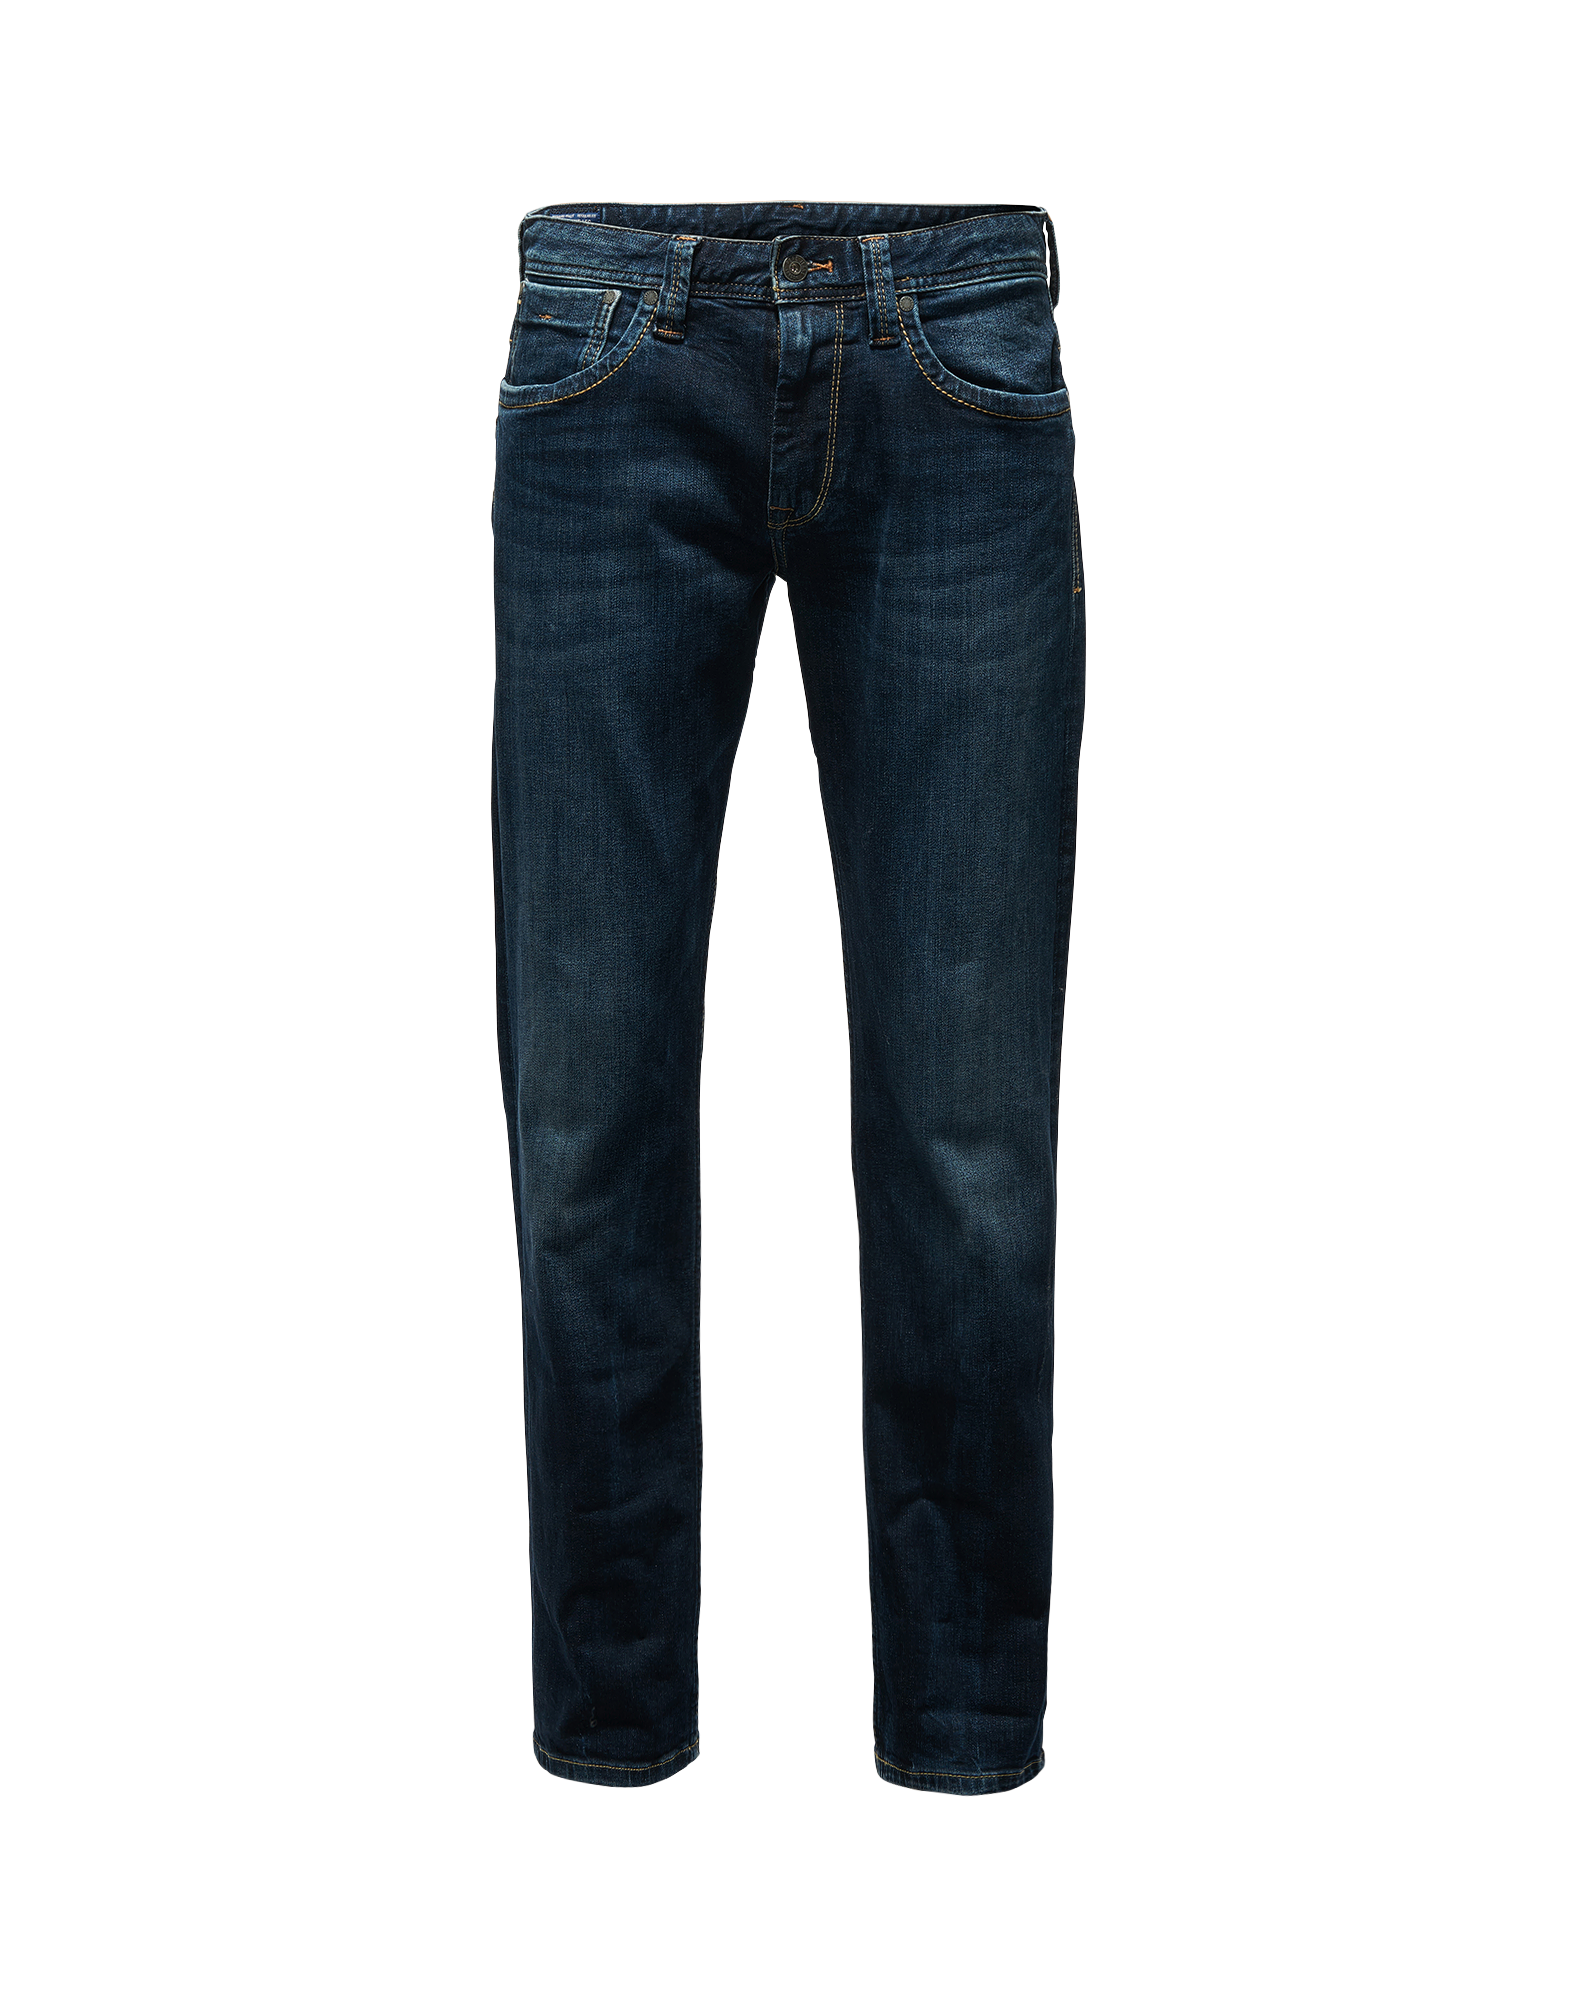 PROMO Uomo Pepe Jeans Jeans in Blu Scuro 